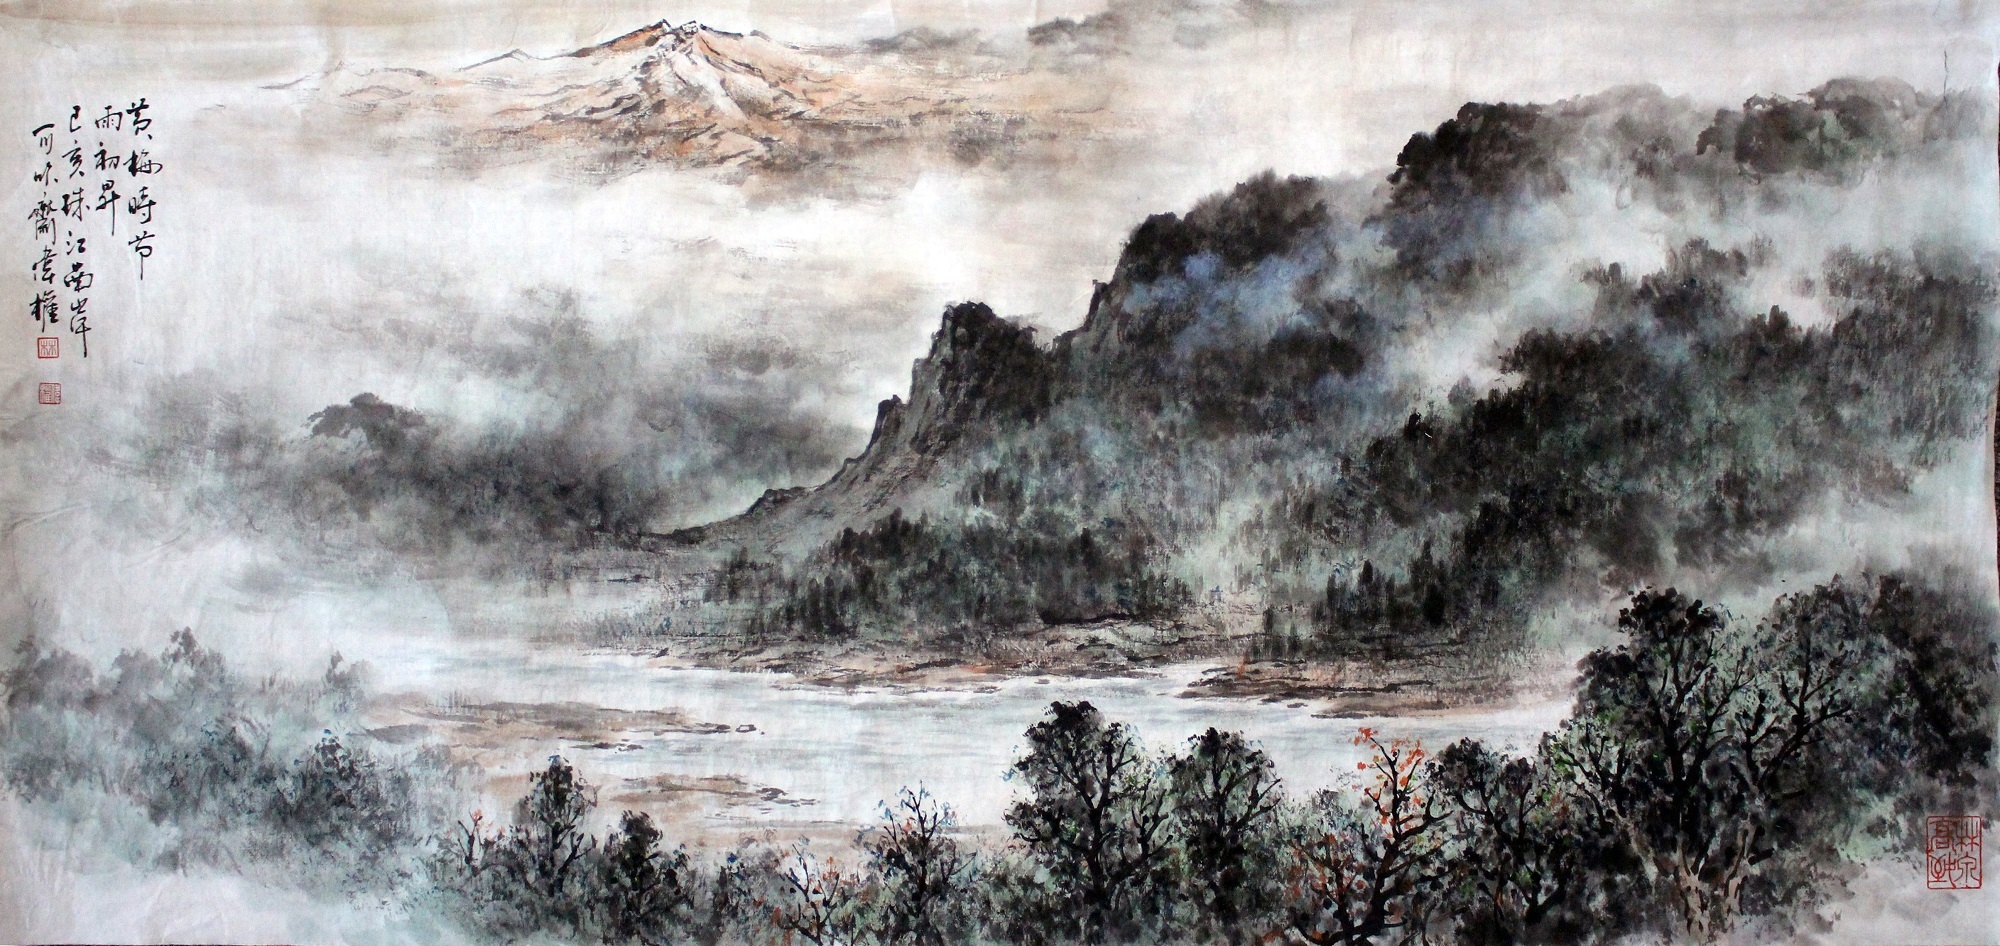 林伟权:展现大自然美态的岭南画派山水名家